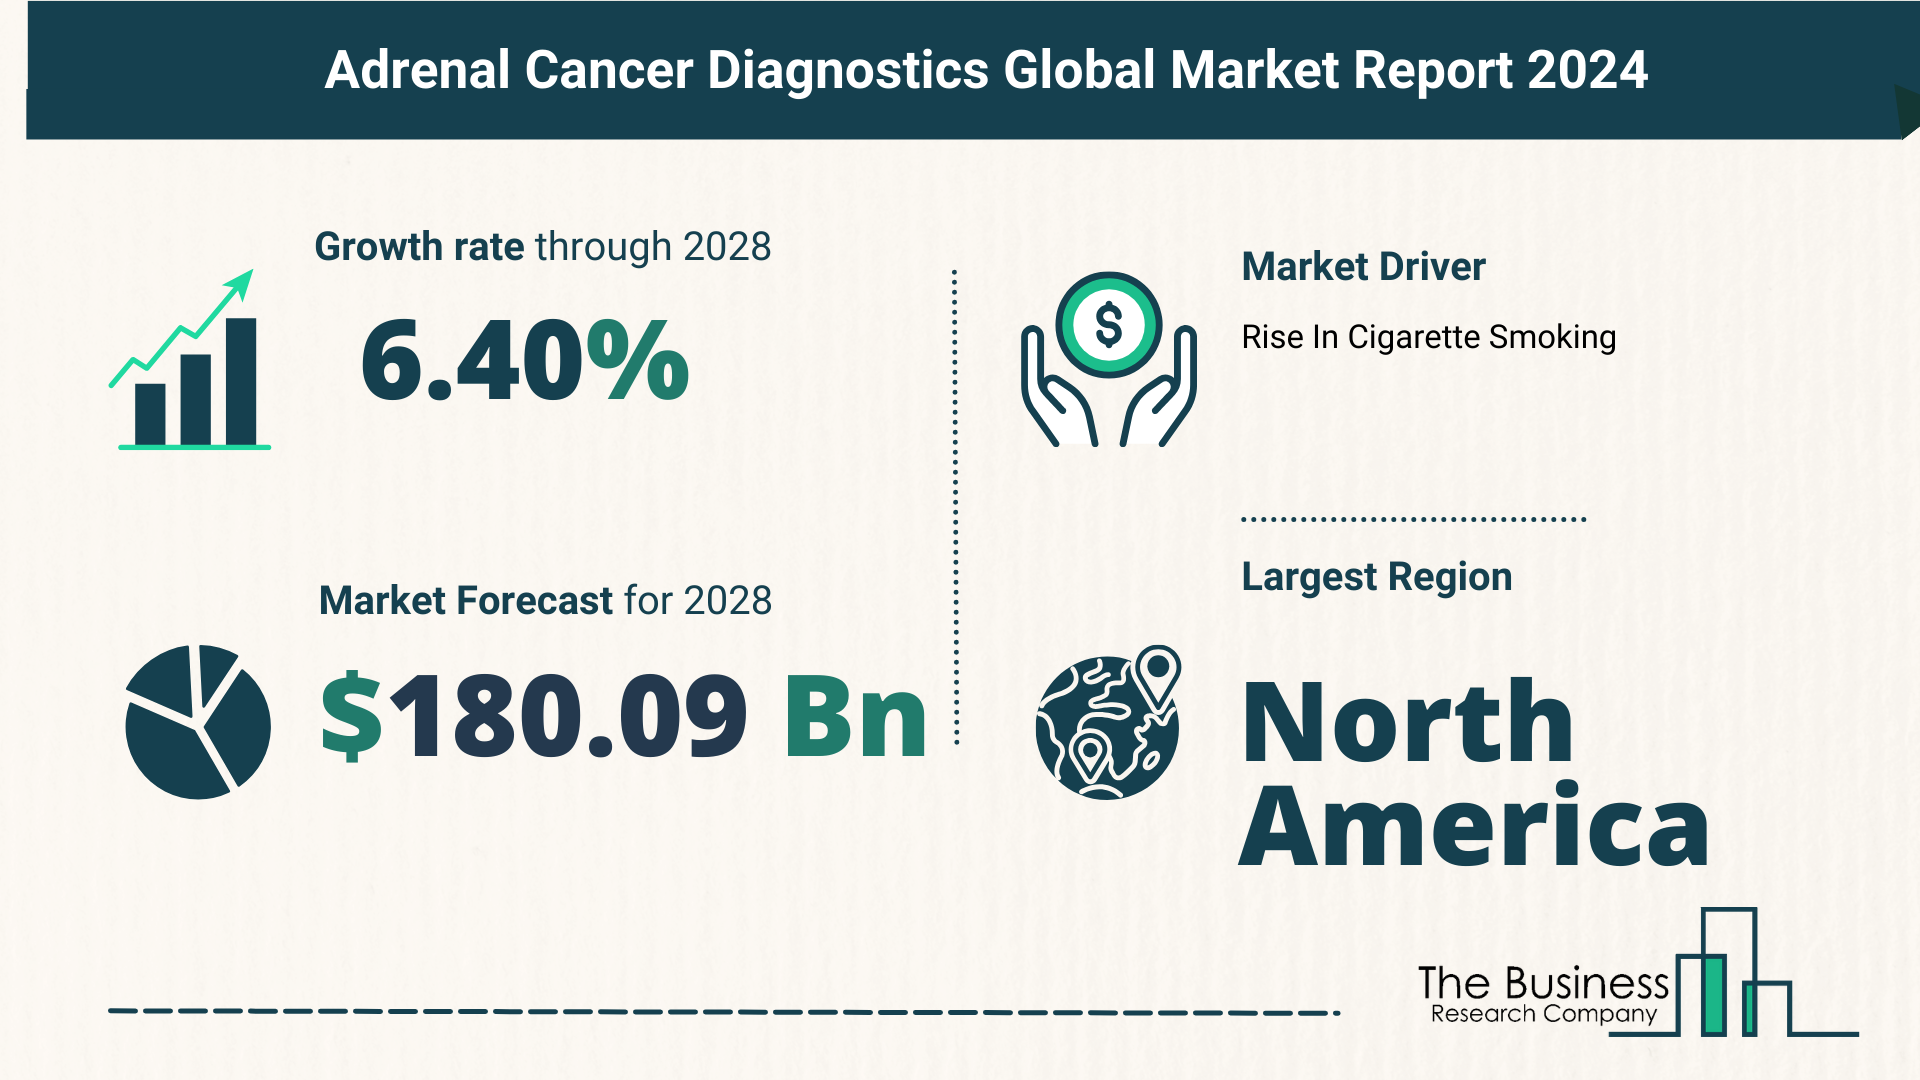 Global Adrenal Cancer Diagnostics Market